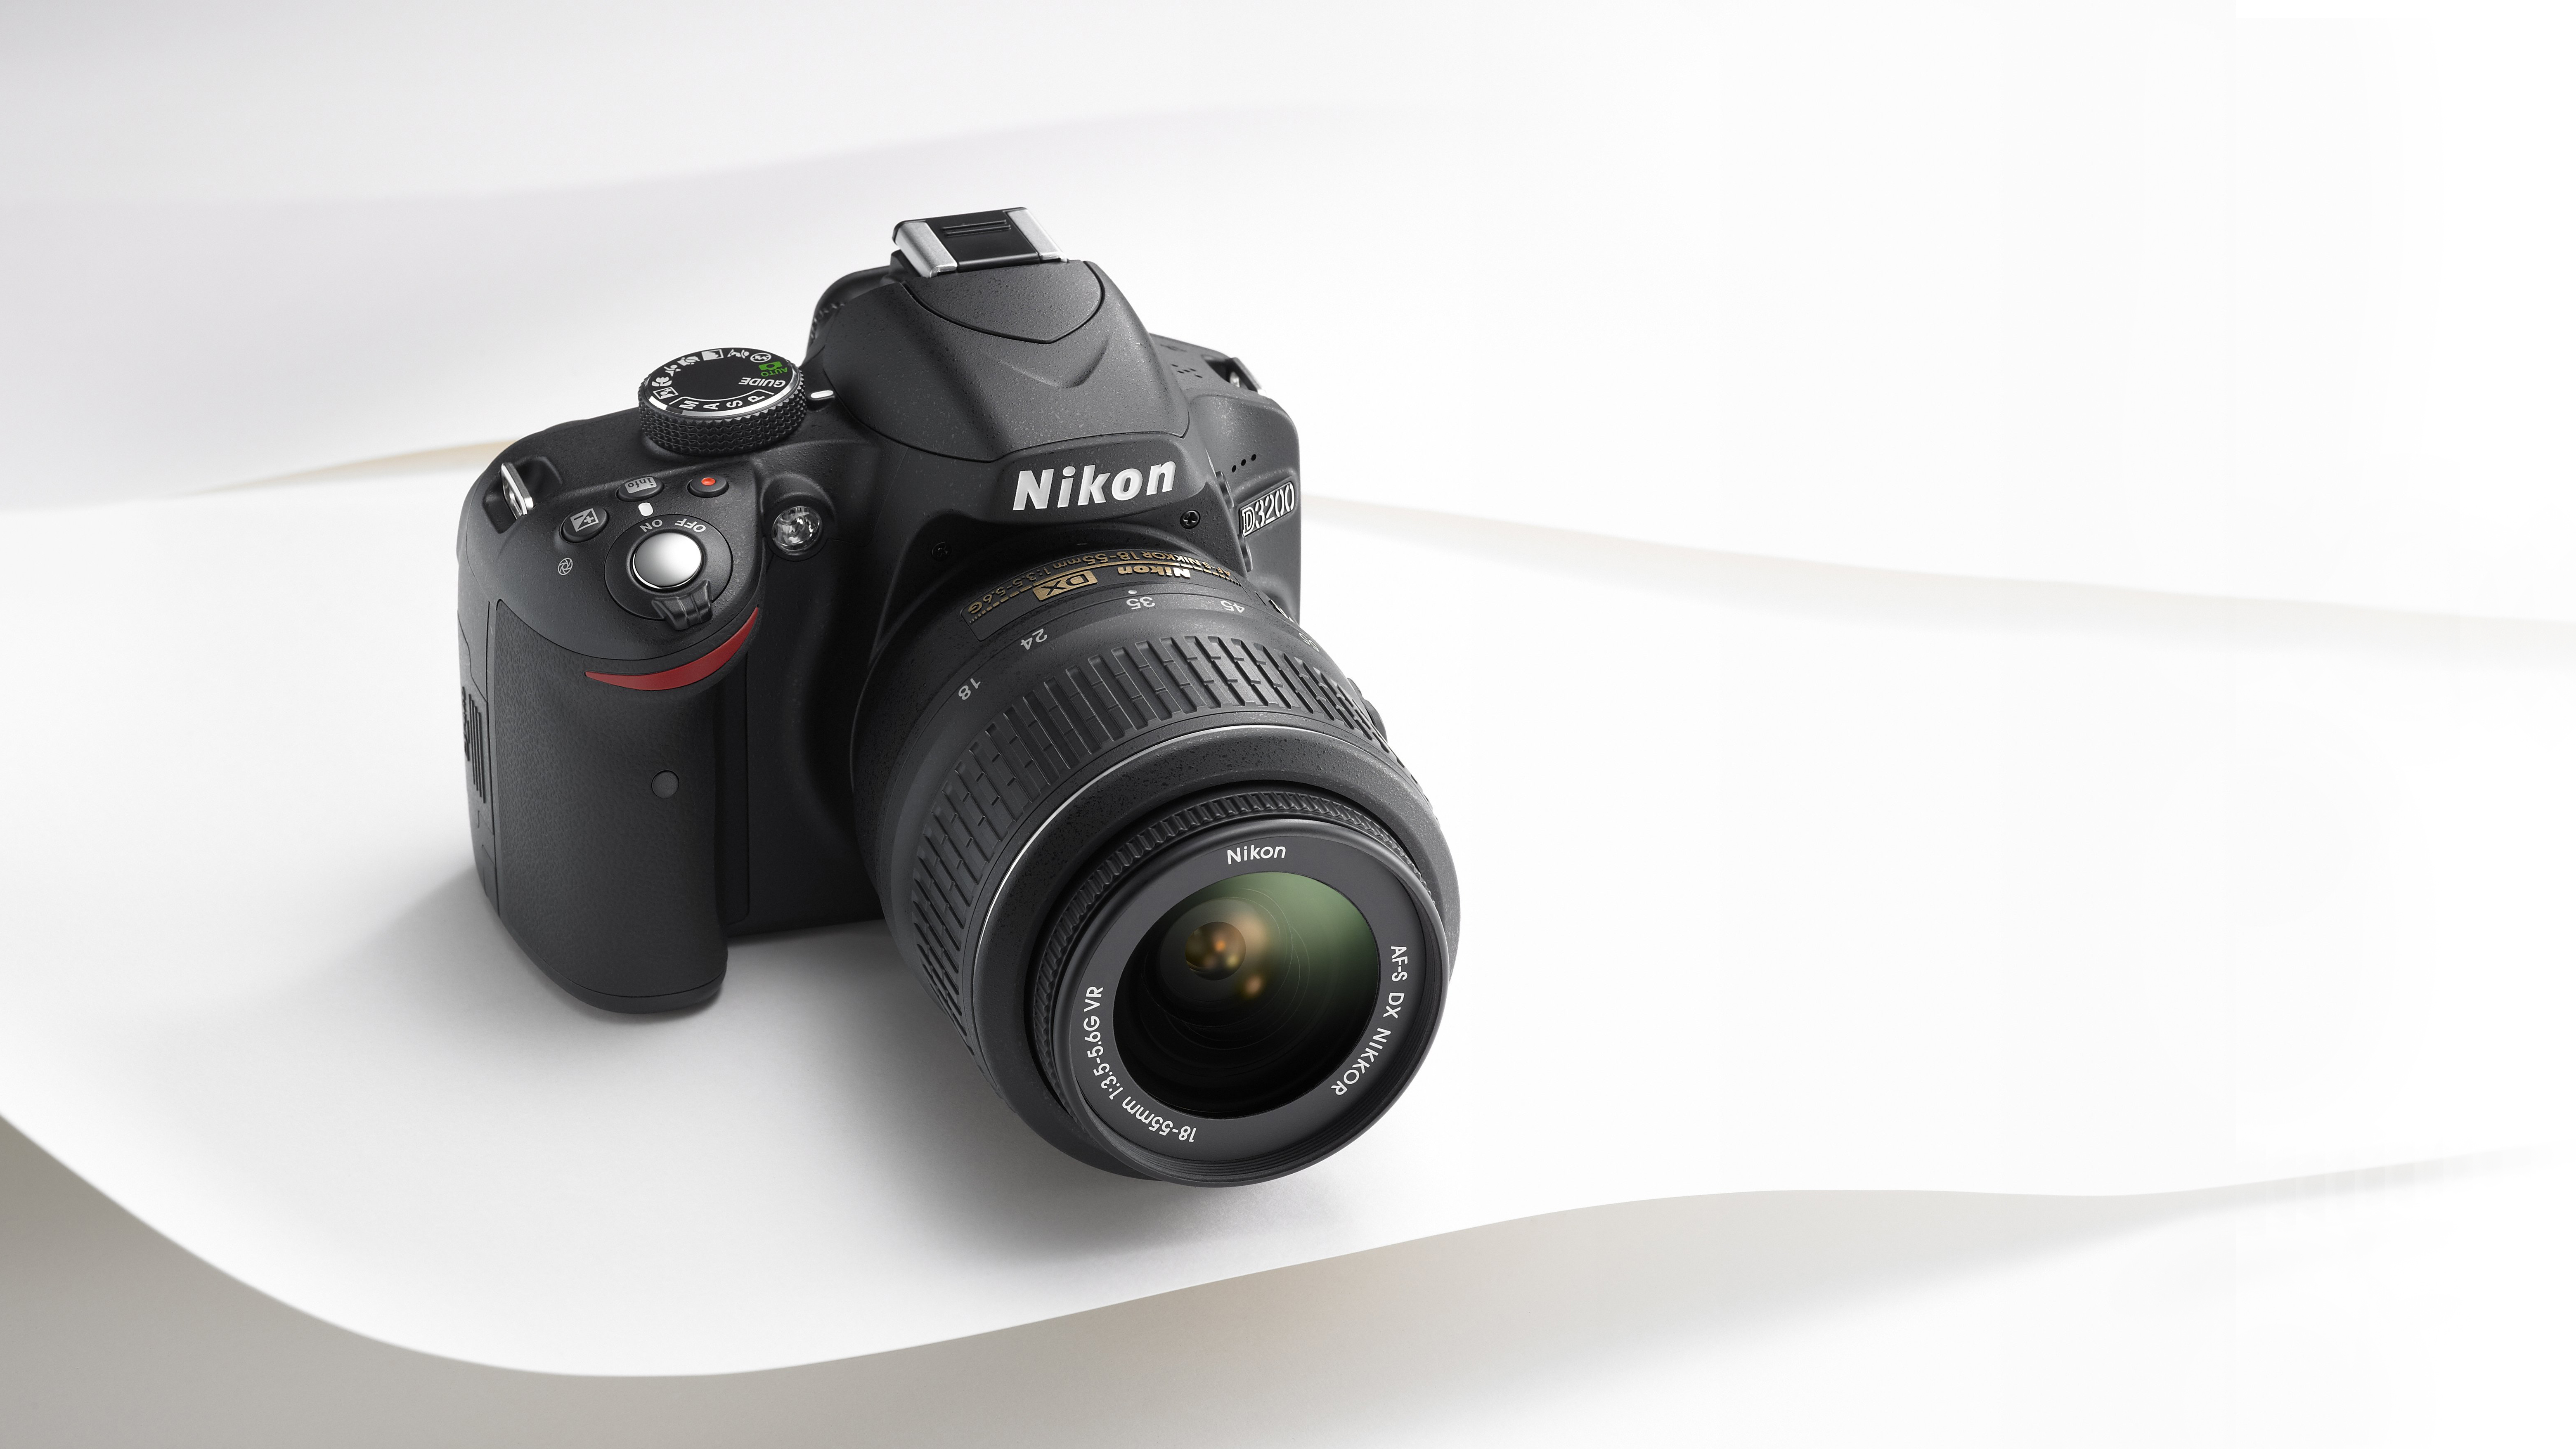  Nikon D3200 24.2 Megapixel HD Video,Wi-Fi